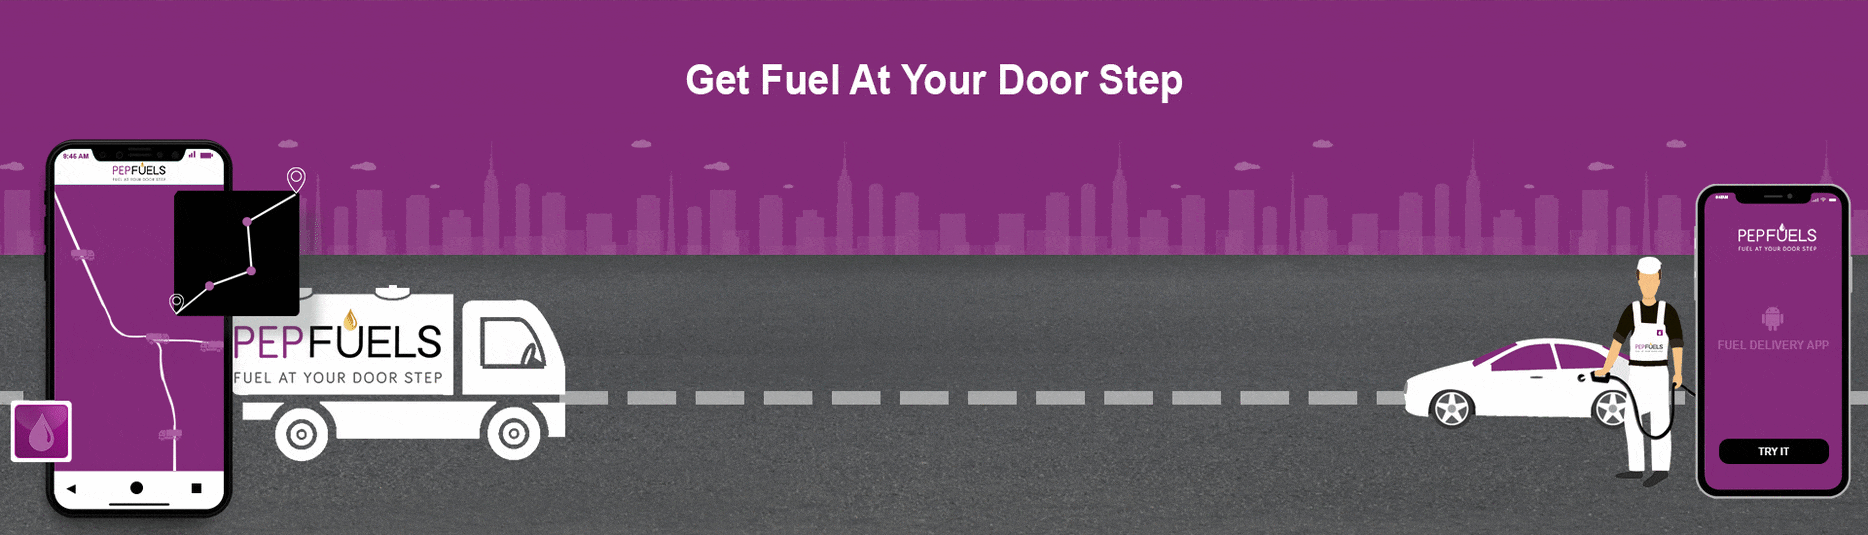 Get fuel at your door step